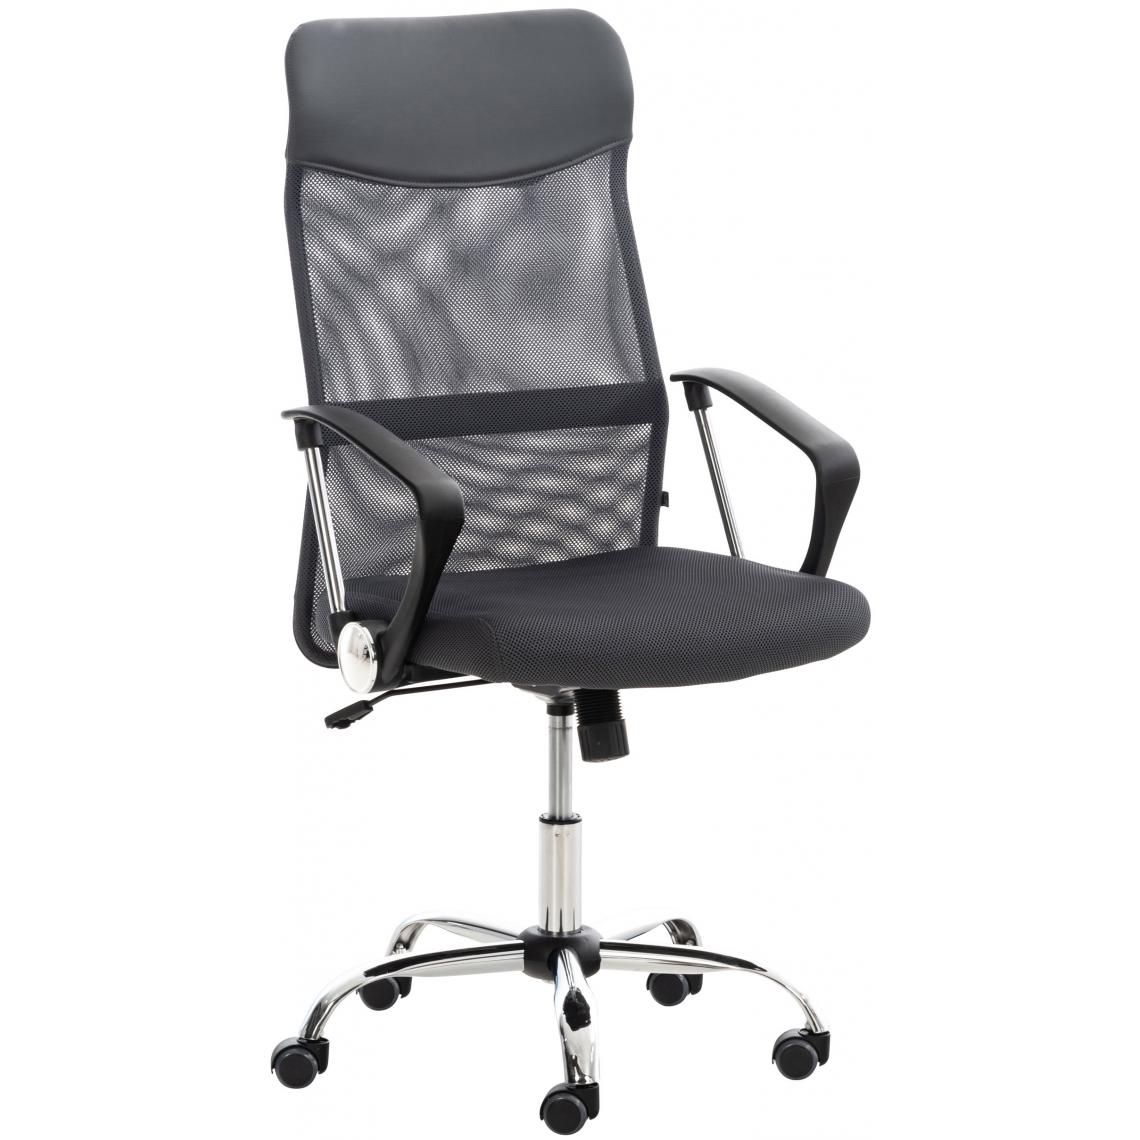 Icaverne - Superbe Chaise de bureau Rabat couleur gris - Chaises